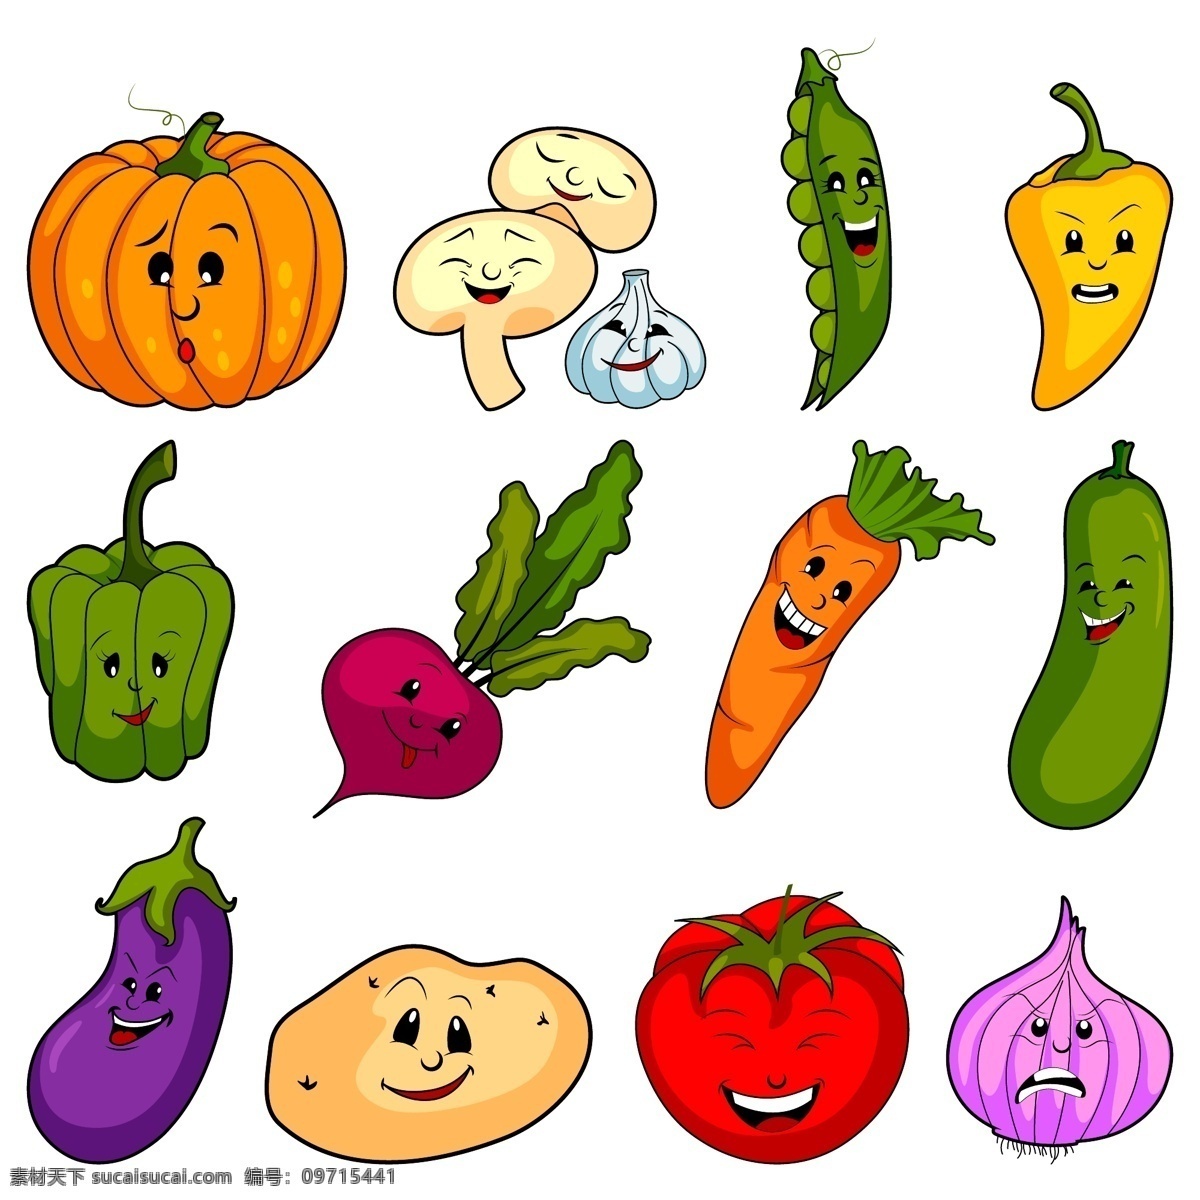 可爱卡通蔬菜 蔬菜 卡通 可爱蔬菜 笑脸蔬菜 卡通笑脸蔬菜 共享设计矢量 生物世界